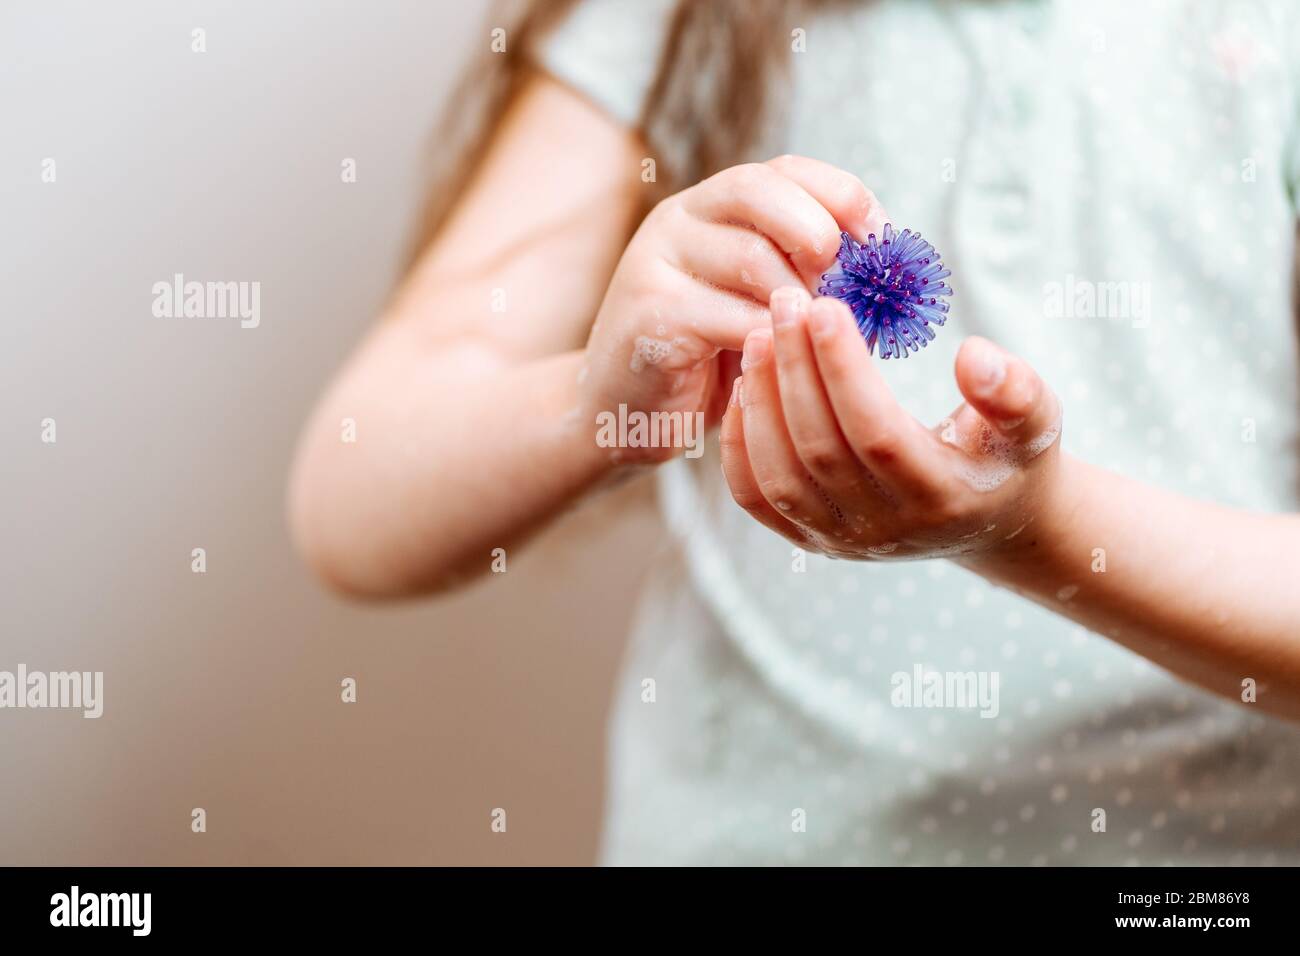 Mädchen mit Händen in Seife hält ein abstraktes Modell des Coronavirus. Schützen Sie sich waschen Sie Ihre Hände häufiger. Stockfoto